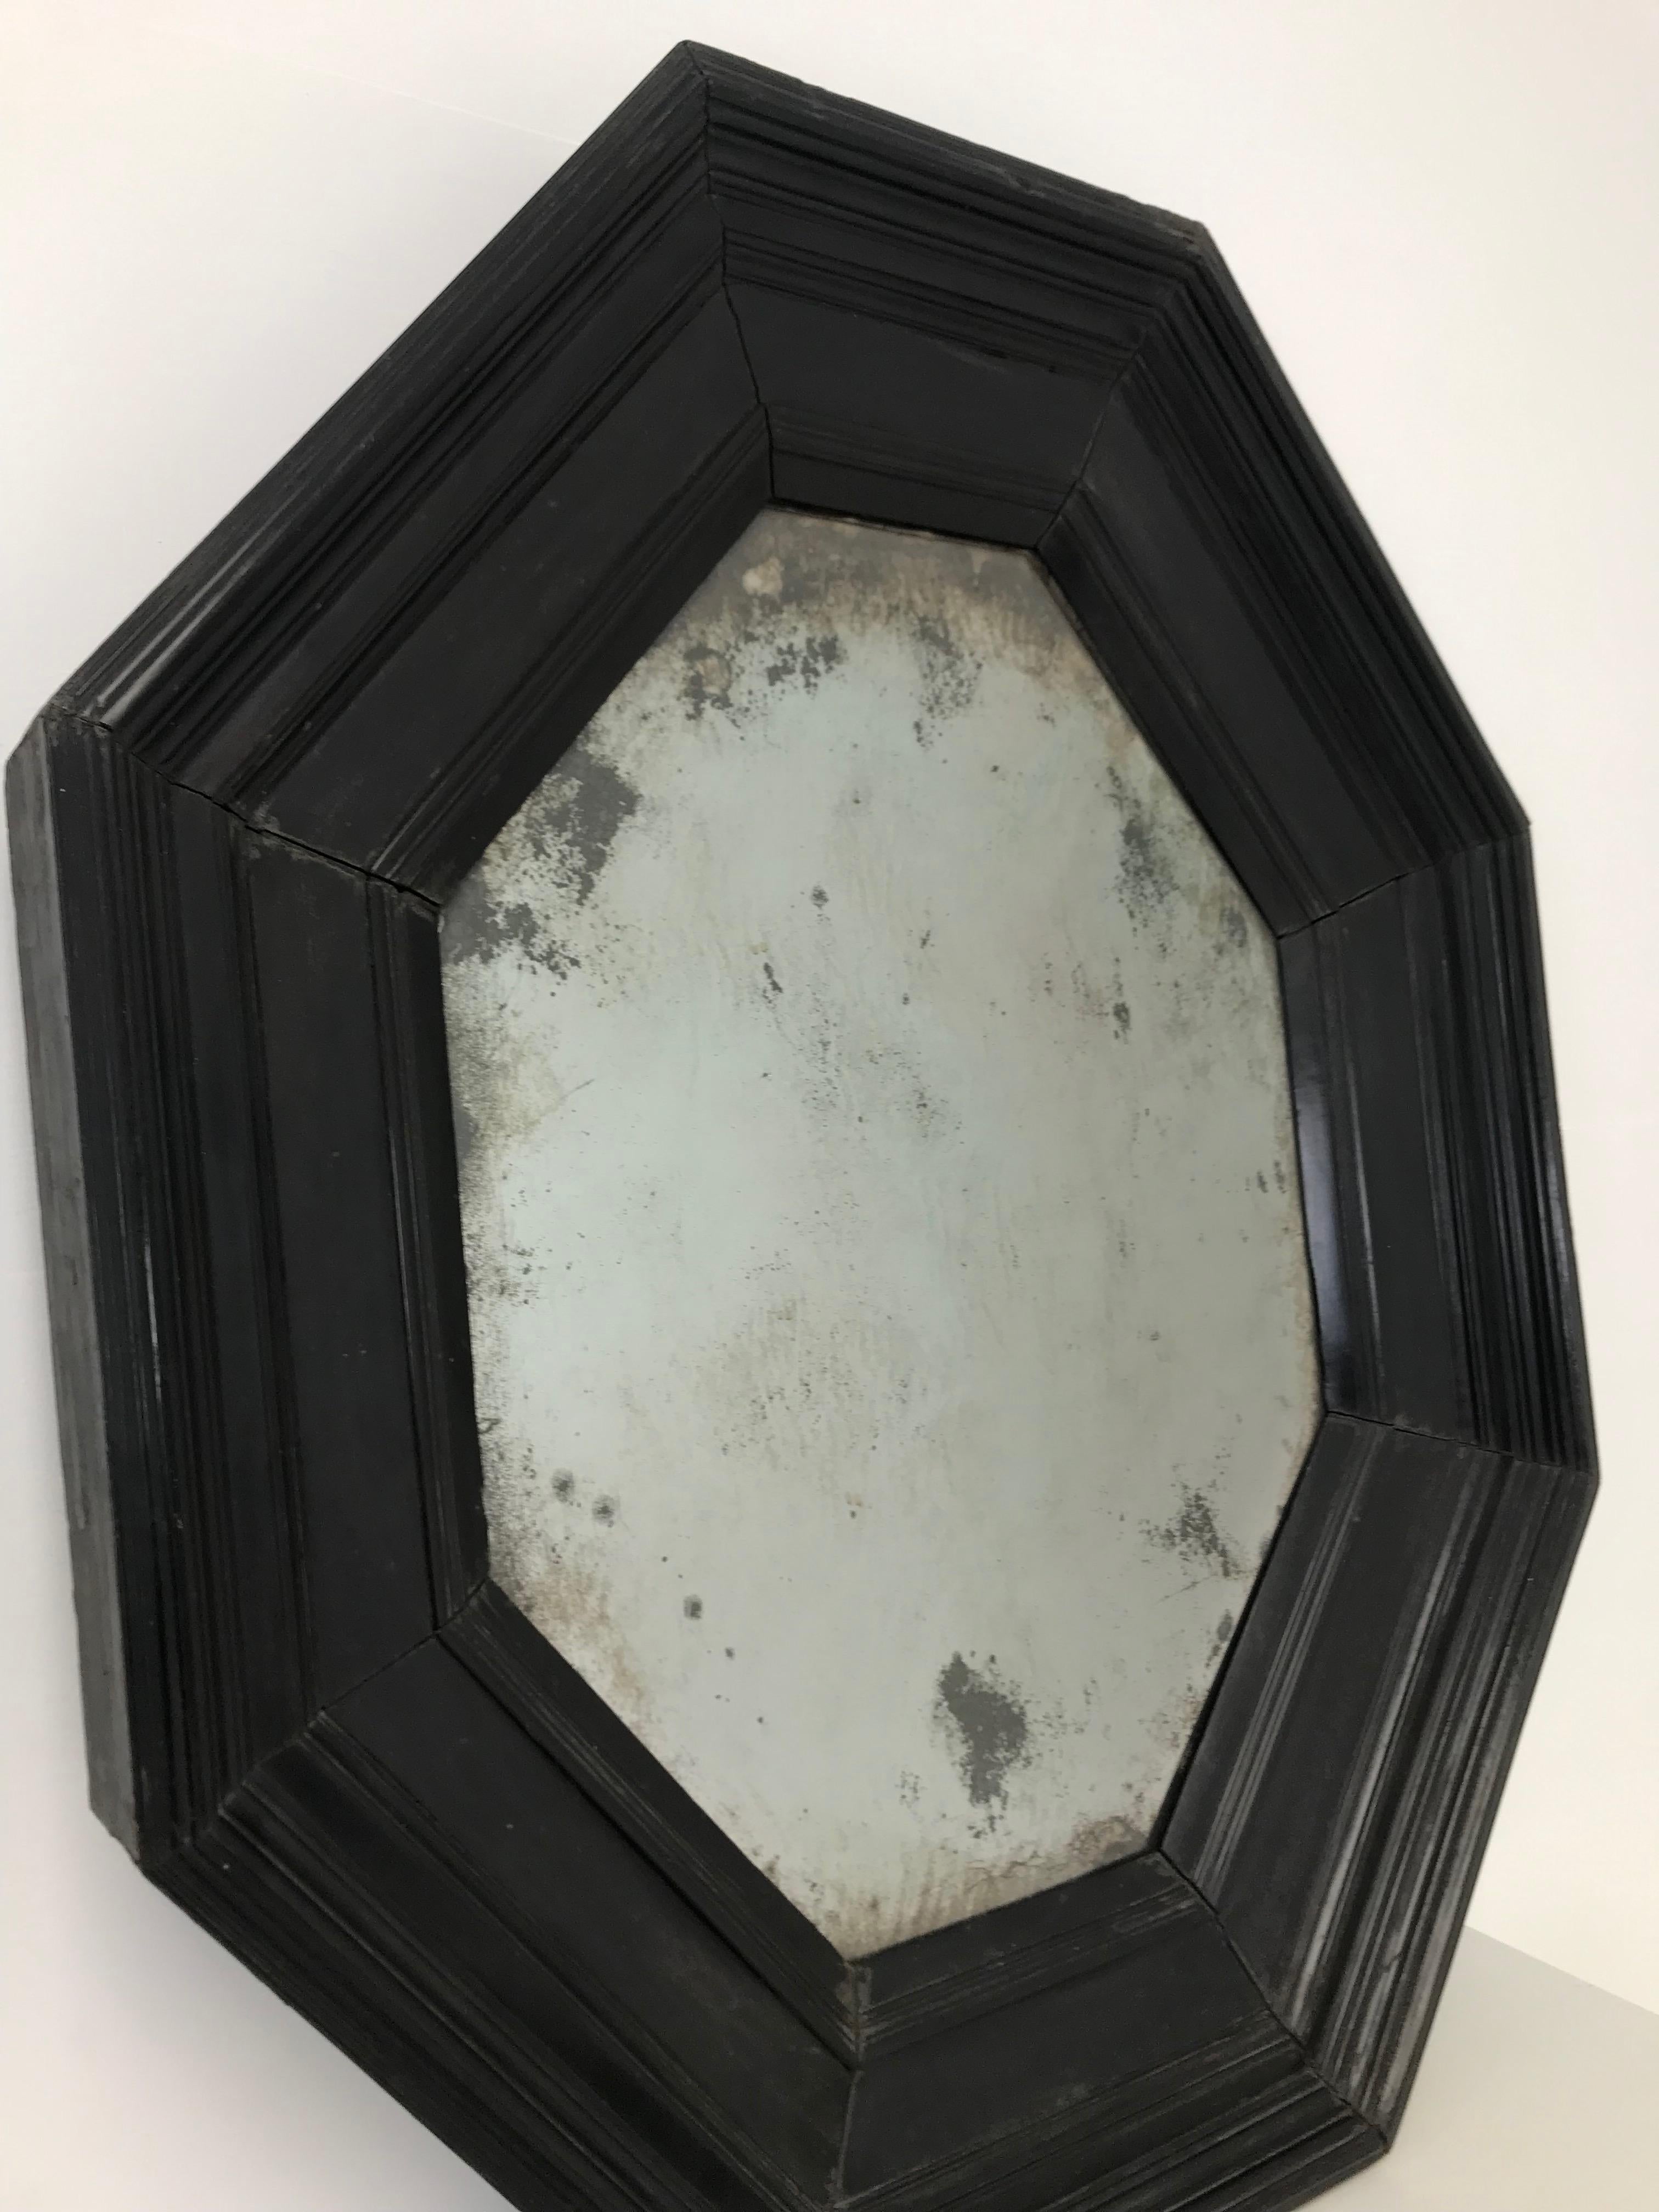 Eleganter, außergewöhnlicher oktogonaler Spiegel Italienischer Spiegel
18. Jahrhundert
Gute Patina
Gekennzeichnet, gestempelt CS auf der Rückseite und an der Seite.